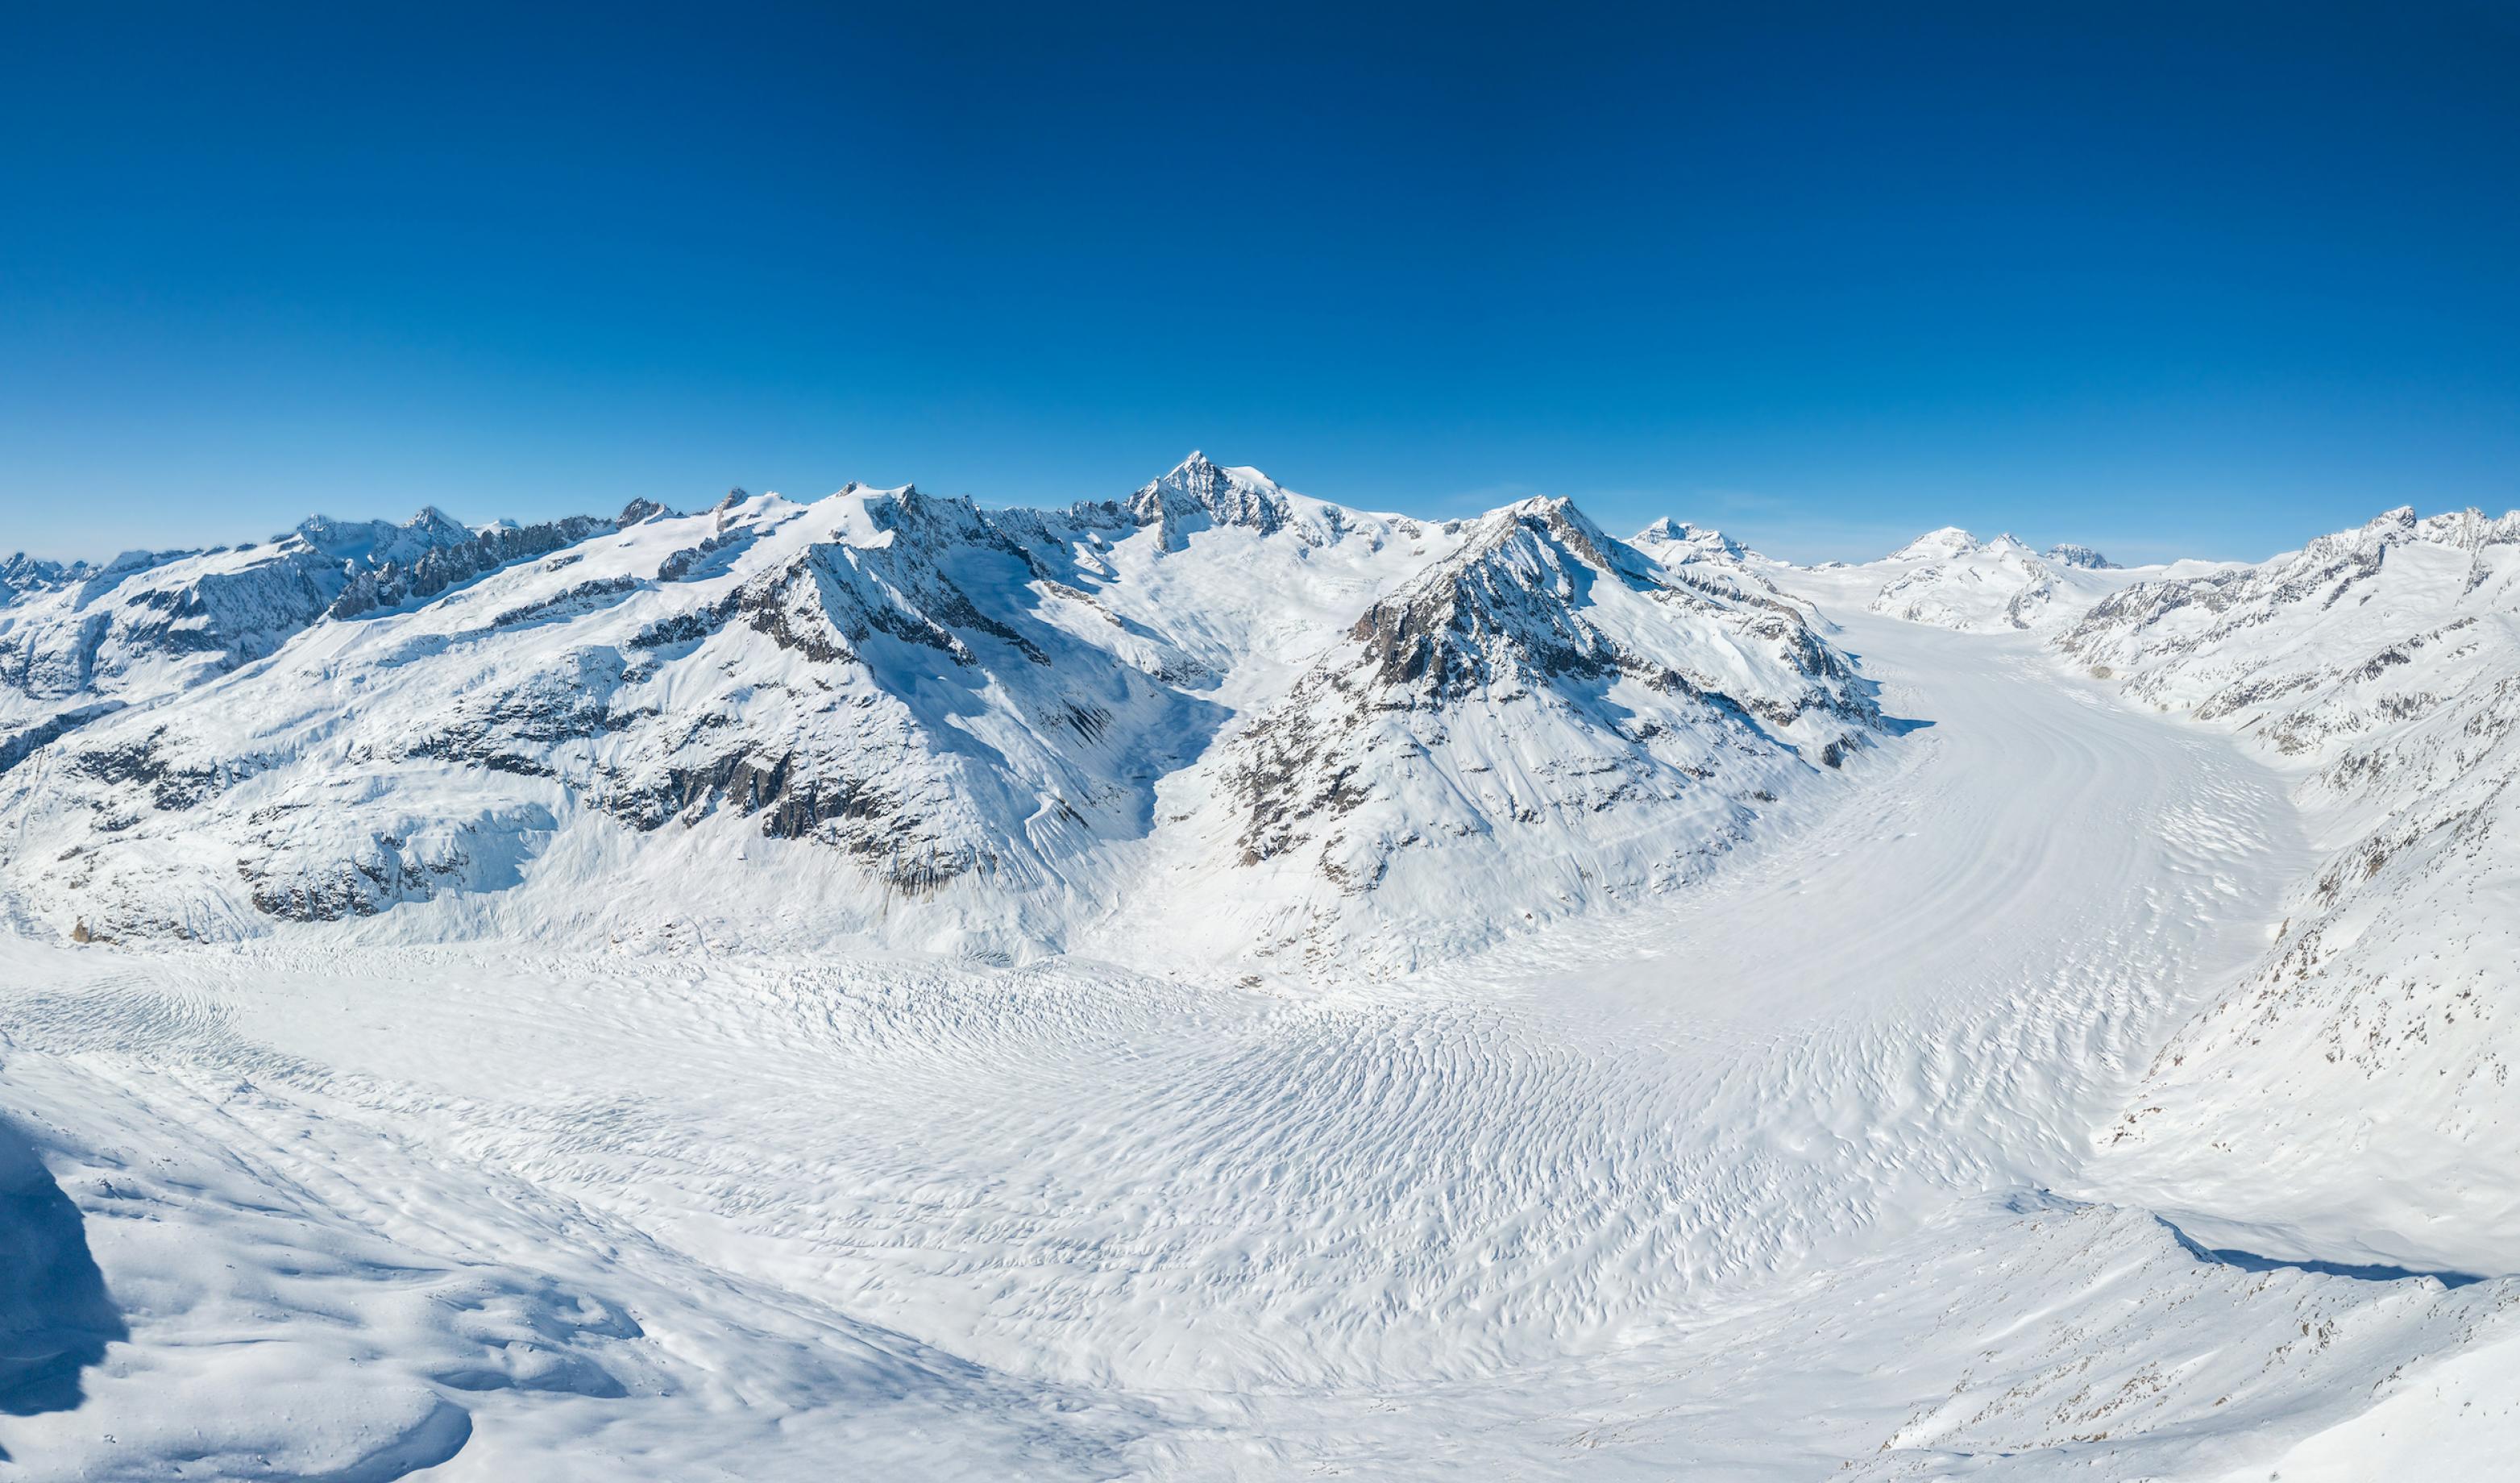 Hochgebirgslandschaft mit dem breiten Gletscherstrom im Winter bei blauem Himmel.